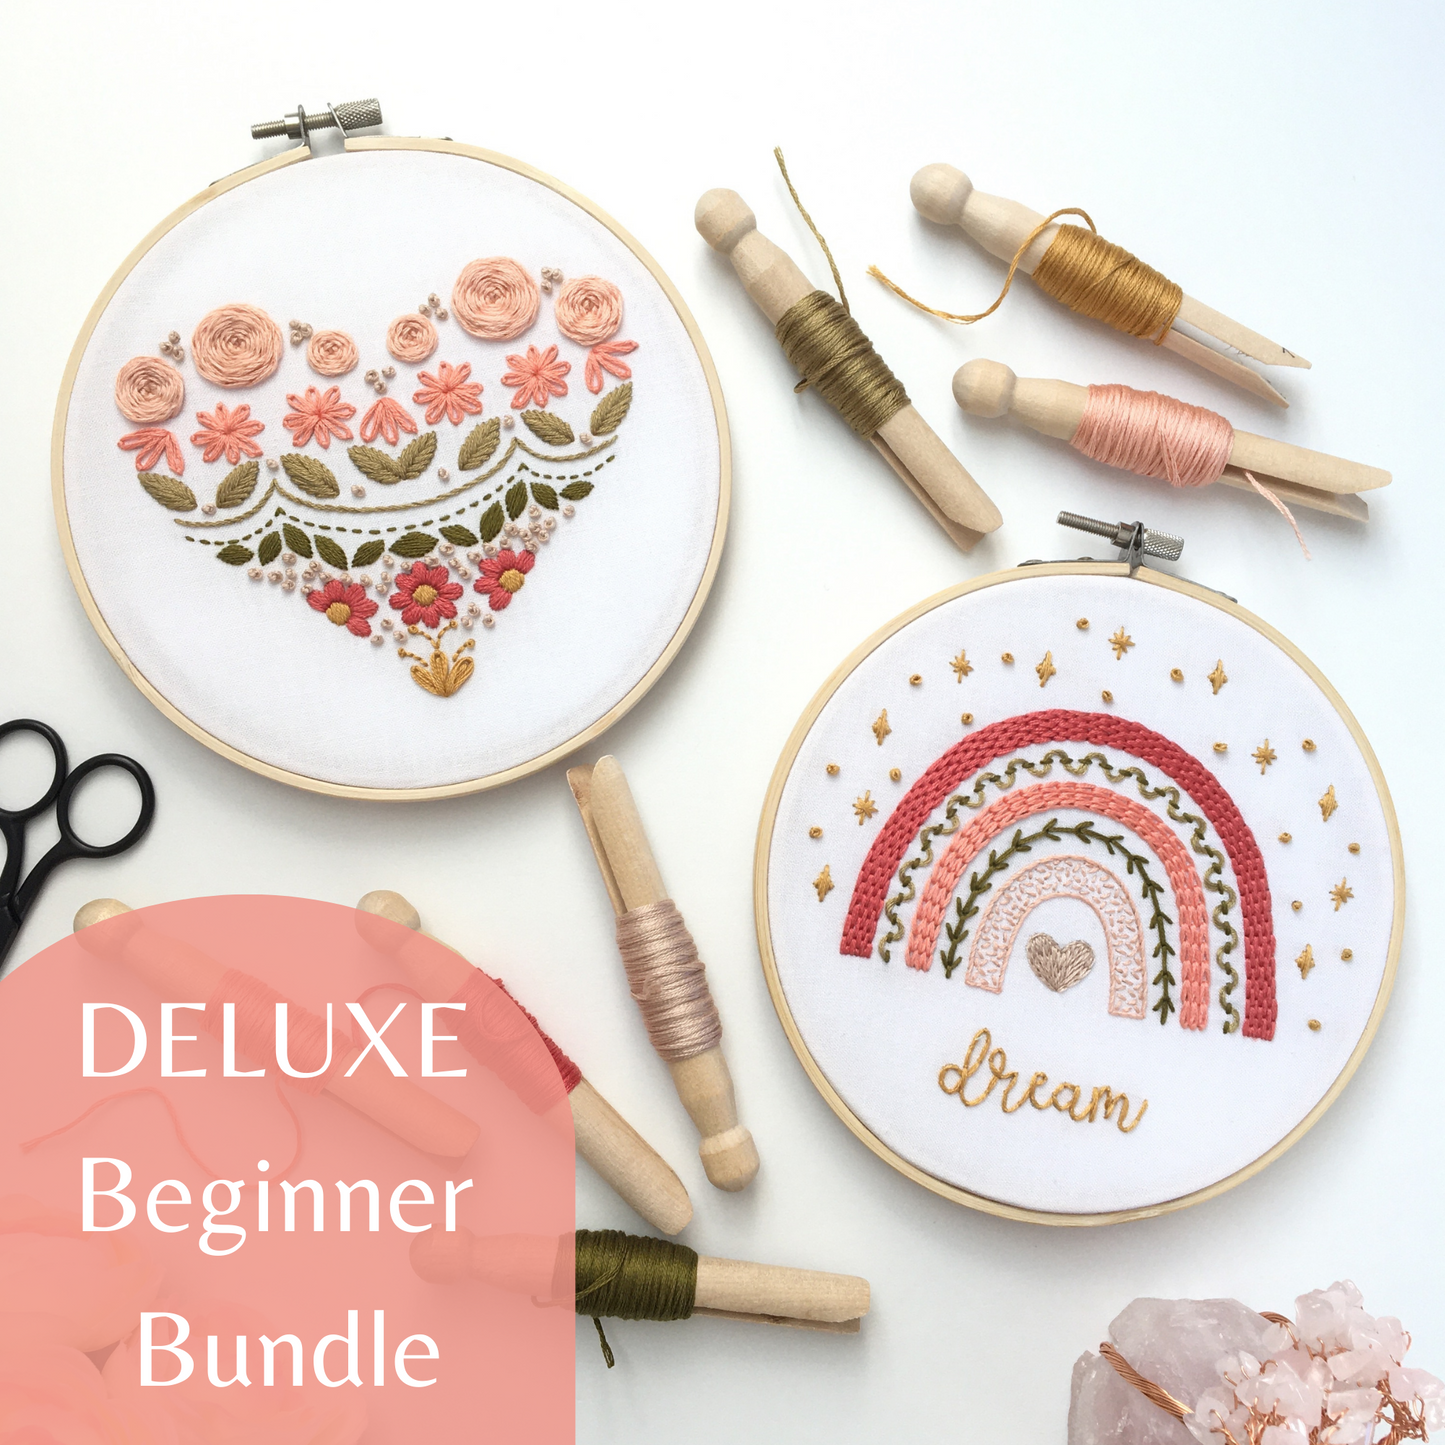 Embroidery Kit Beginner,beginner Embroidery Kit,embroidery Starter Kit,easy  Embroidery Kit,embroidery Sampler Kit,embroidery Stitch Sampler 